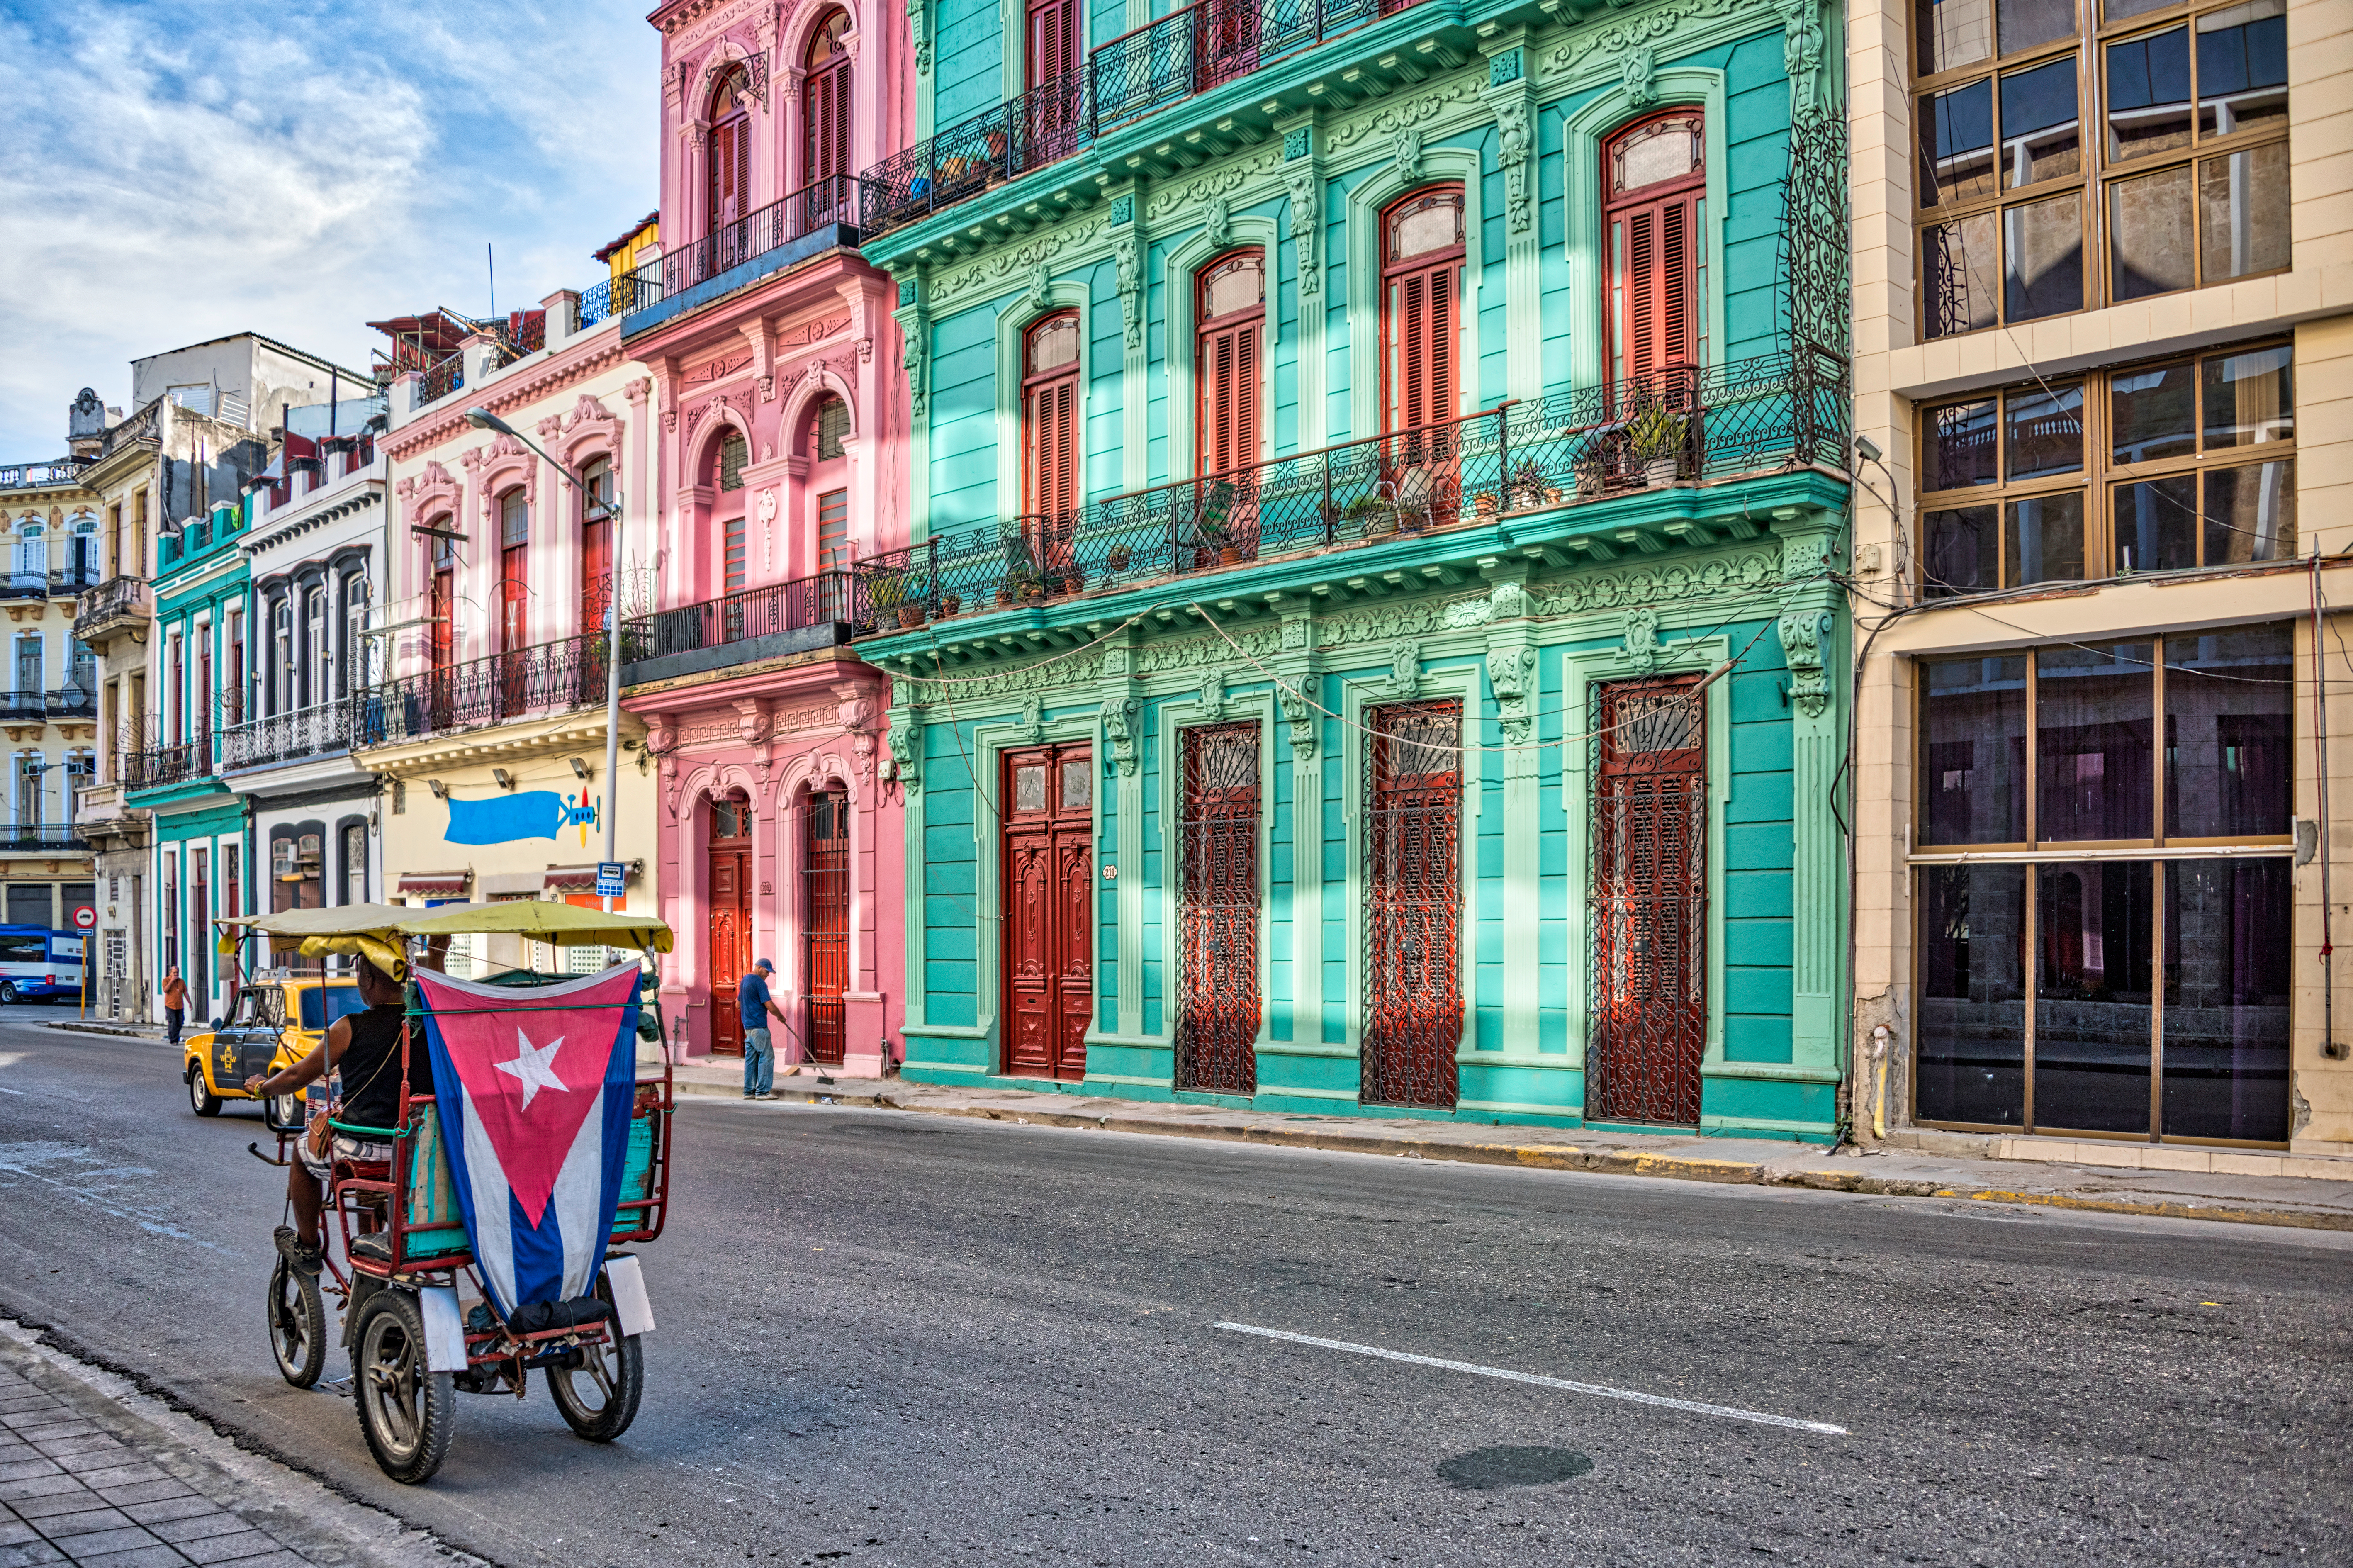     A Cuba, le secteur privé bourgeonne, les commerces de quartier fleurissent

